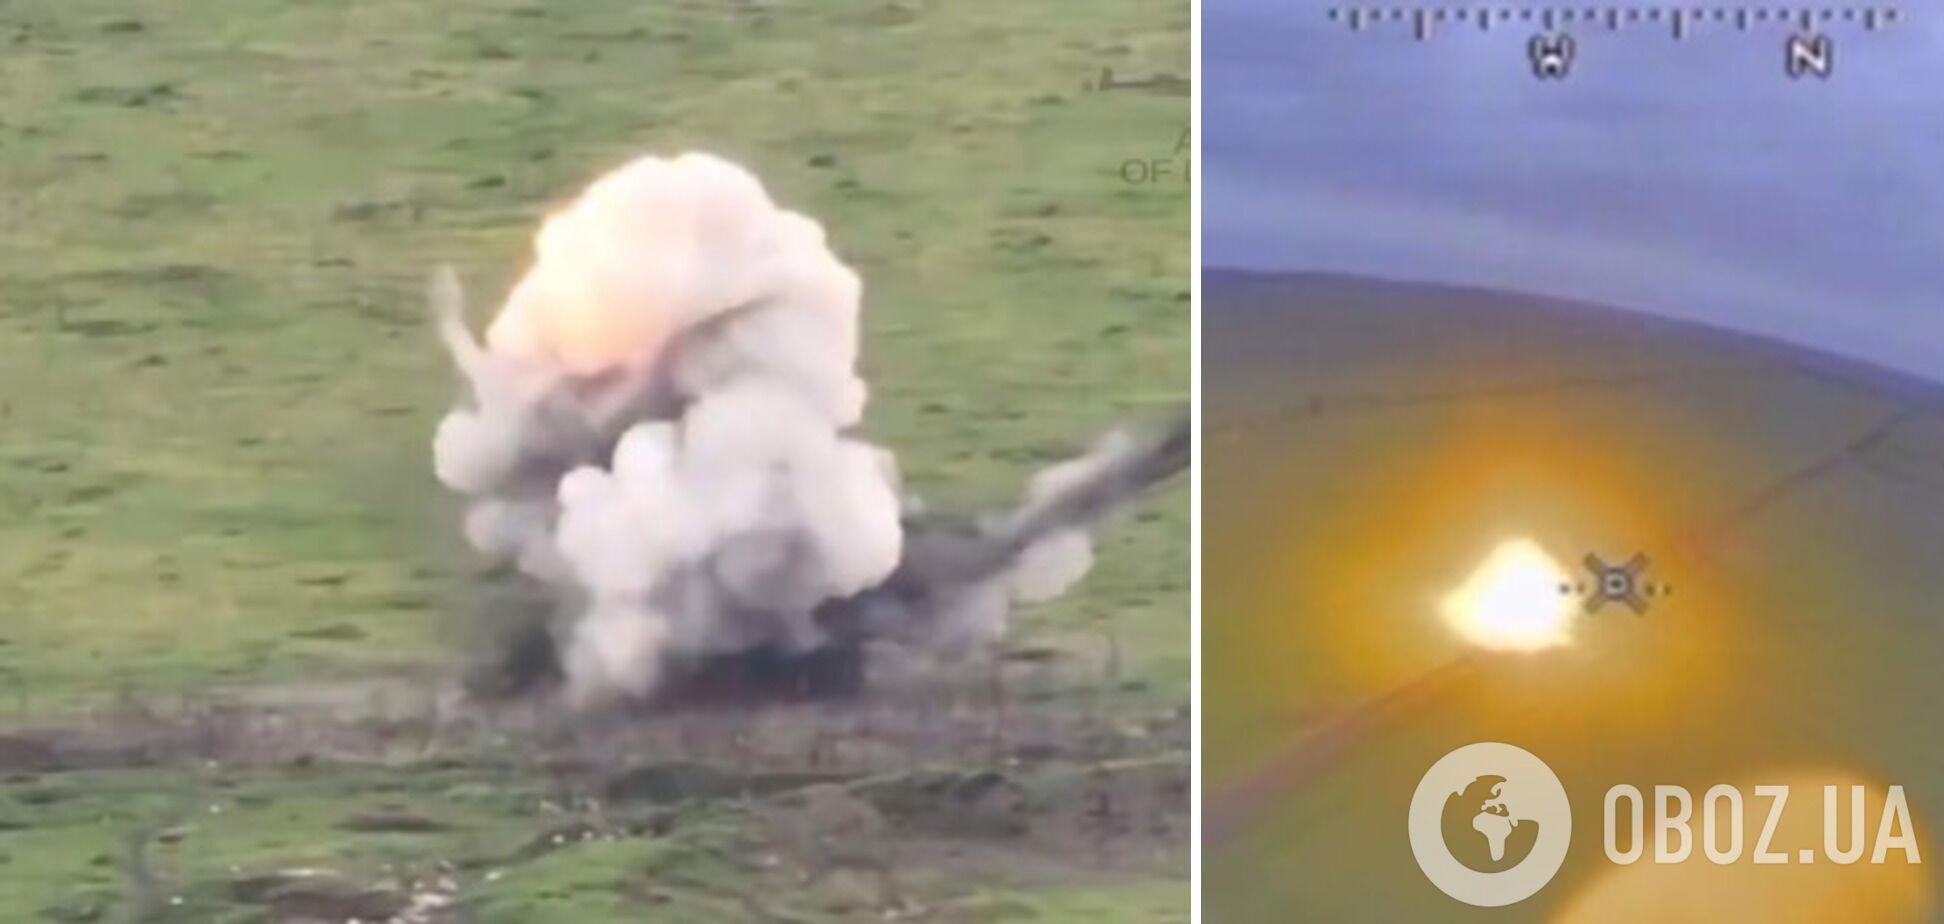 'Армия дронов' работает: ВСУ с помощью 'Пегасов' уничтожили две российские установки 'Змей Горыныч'. Видео